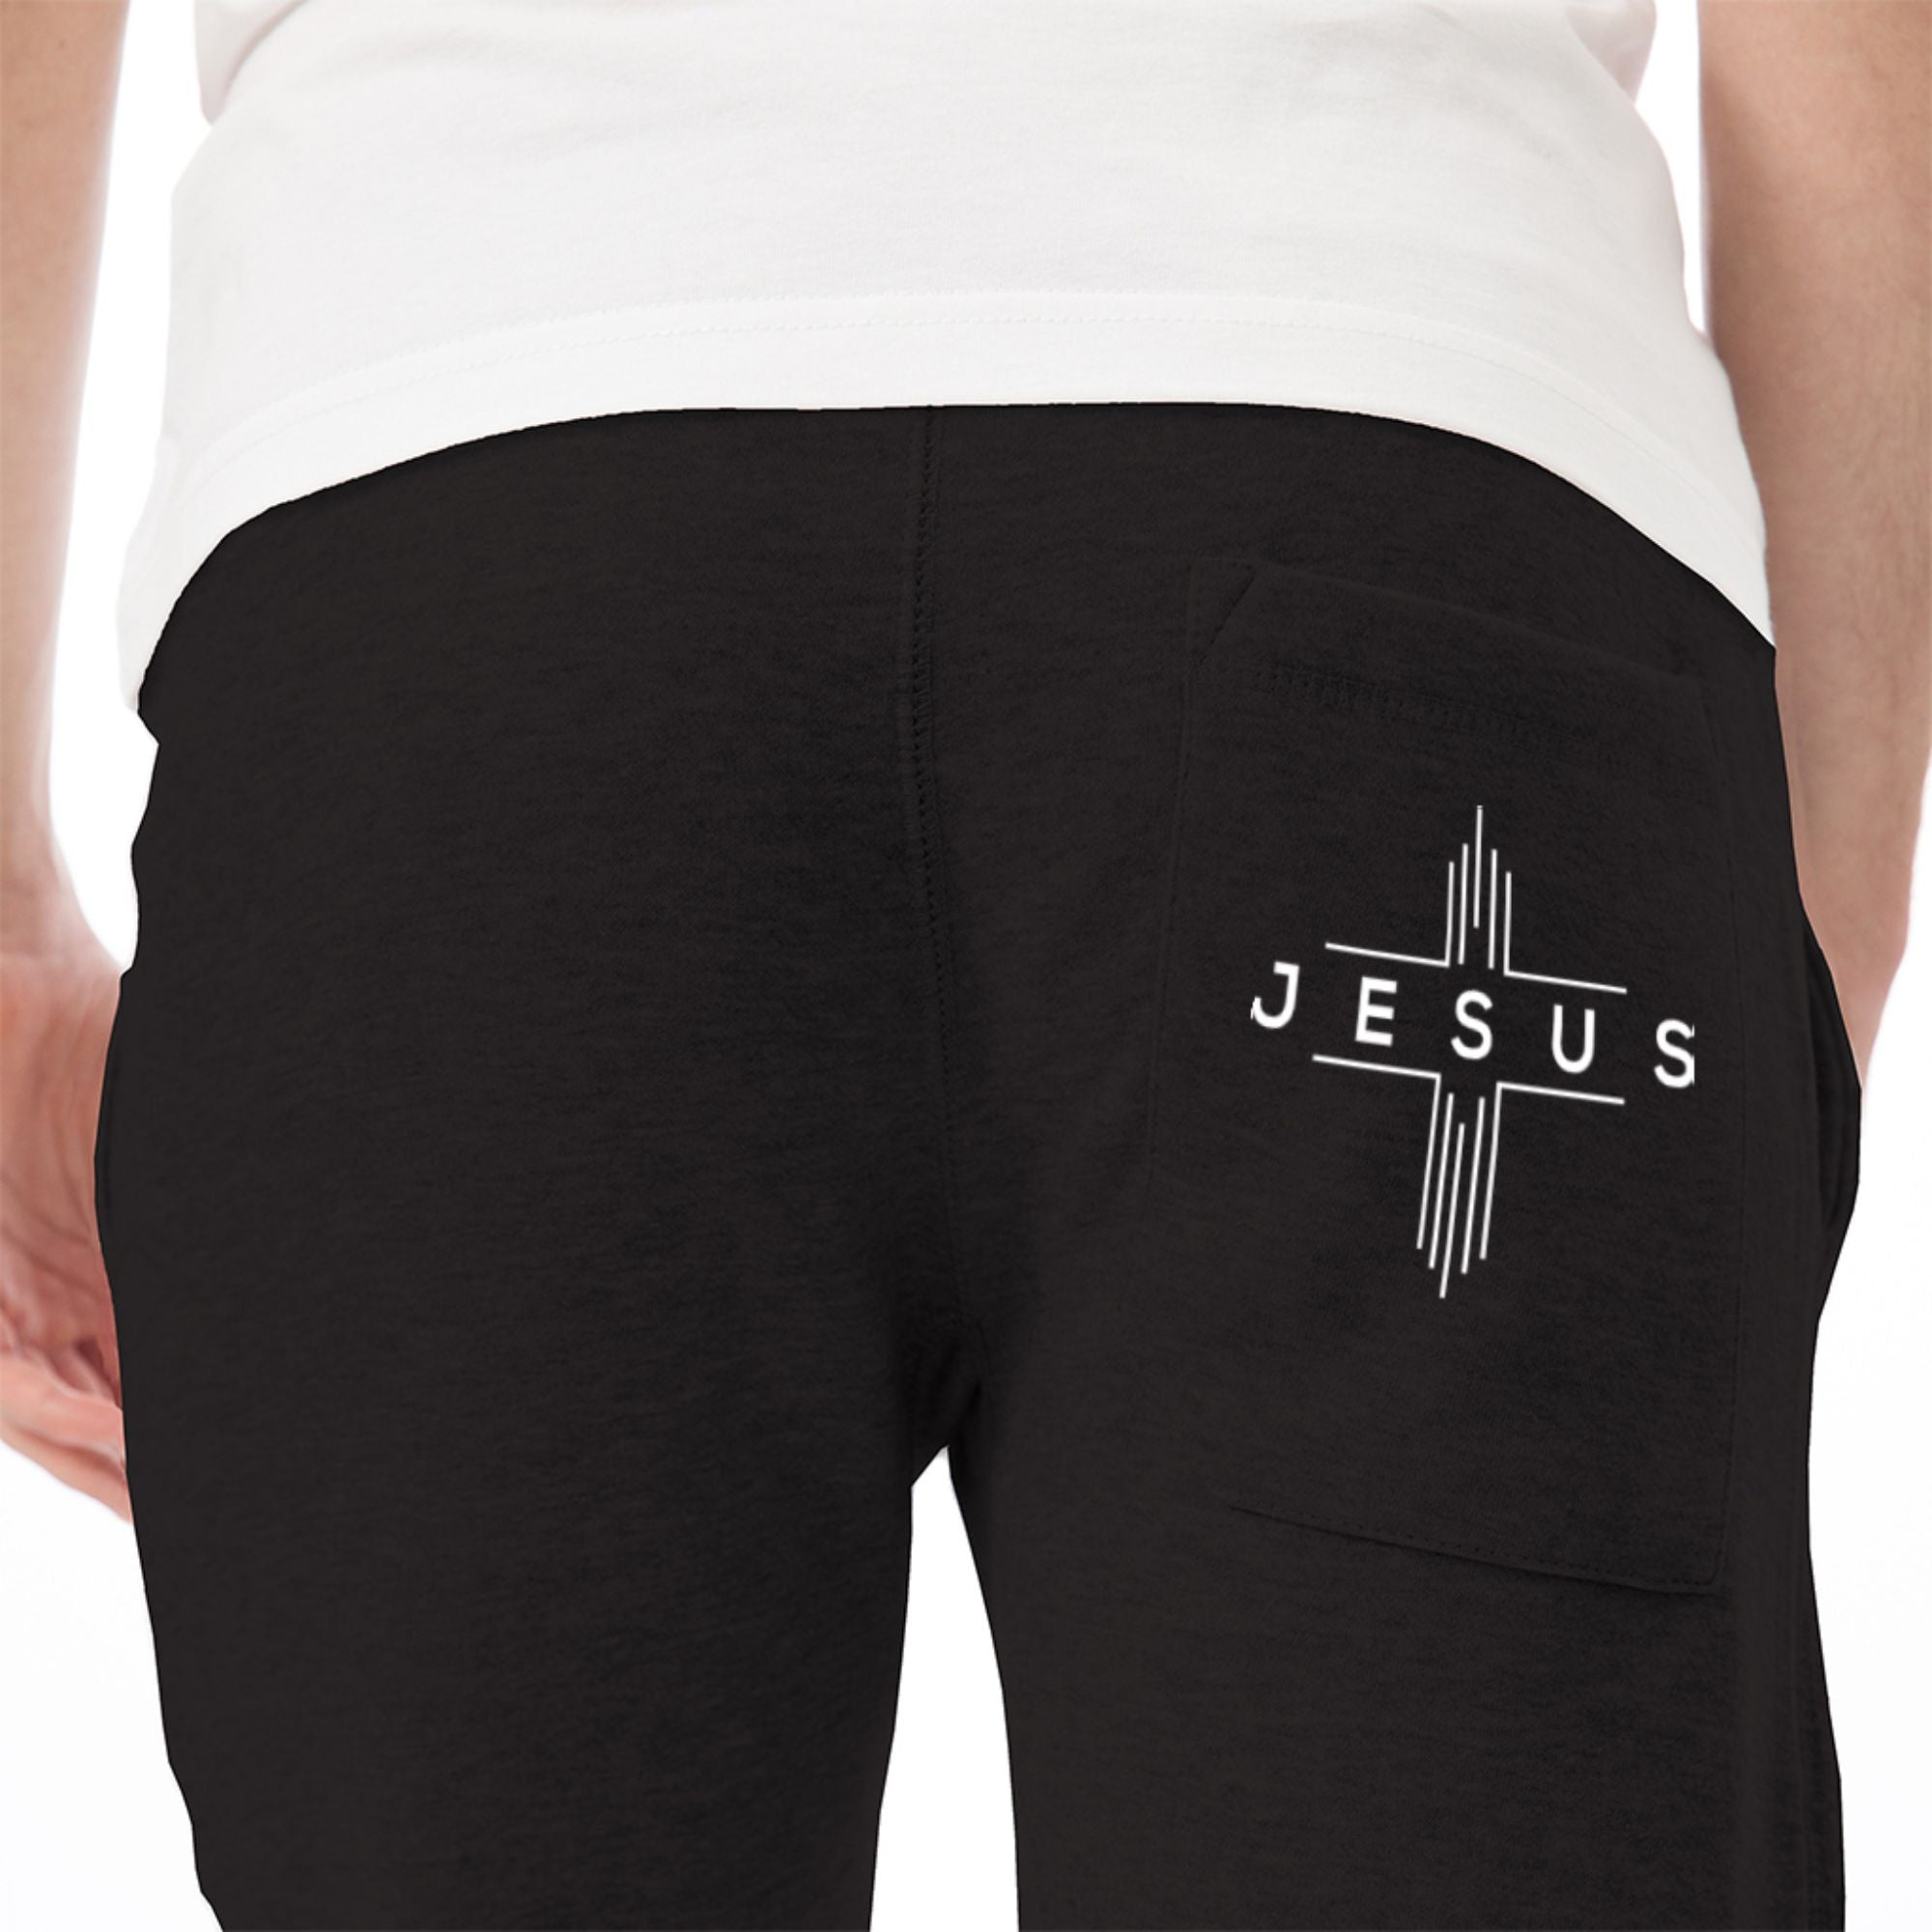 Jesus Cheveron Cross Women's Unisex Premium Fleece Joggers - Black / Red - Matching Champion T-shirt Available Size: S Color: Black Jesus Passion Apparel